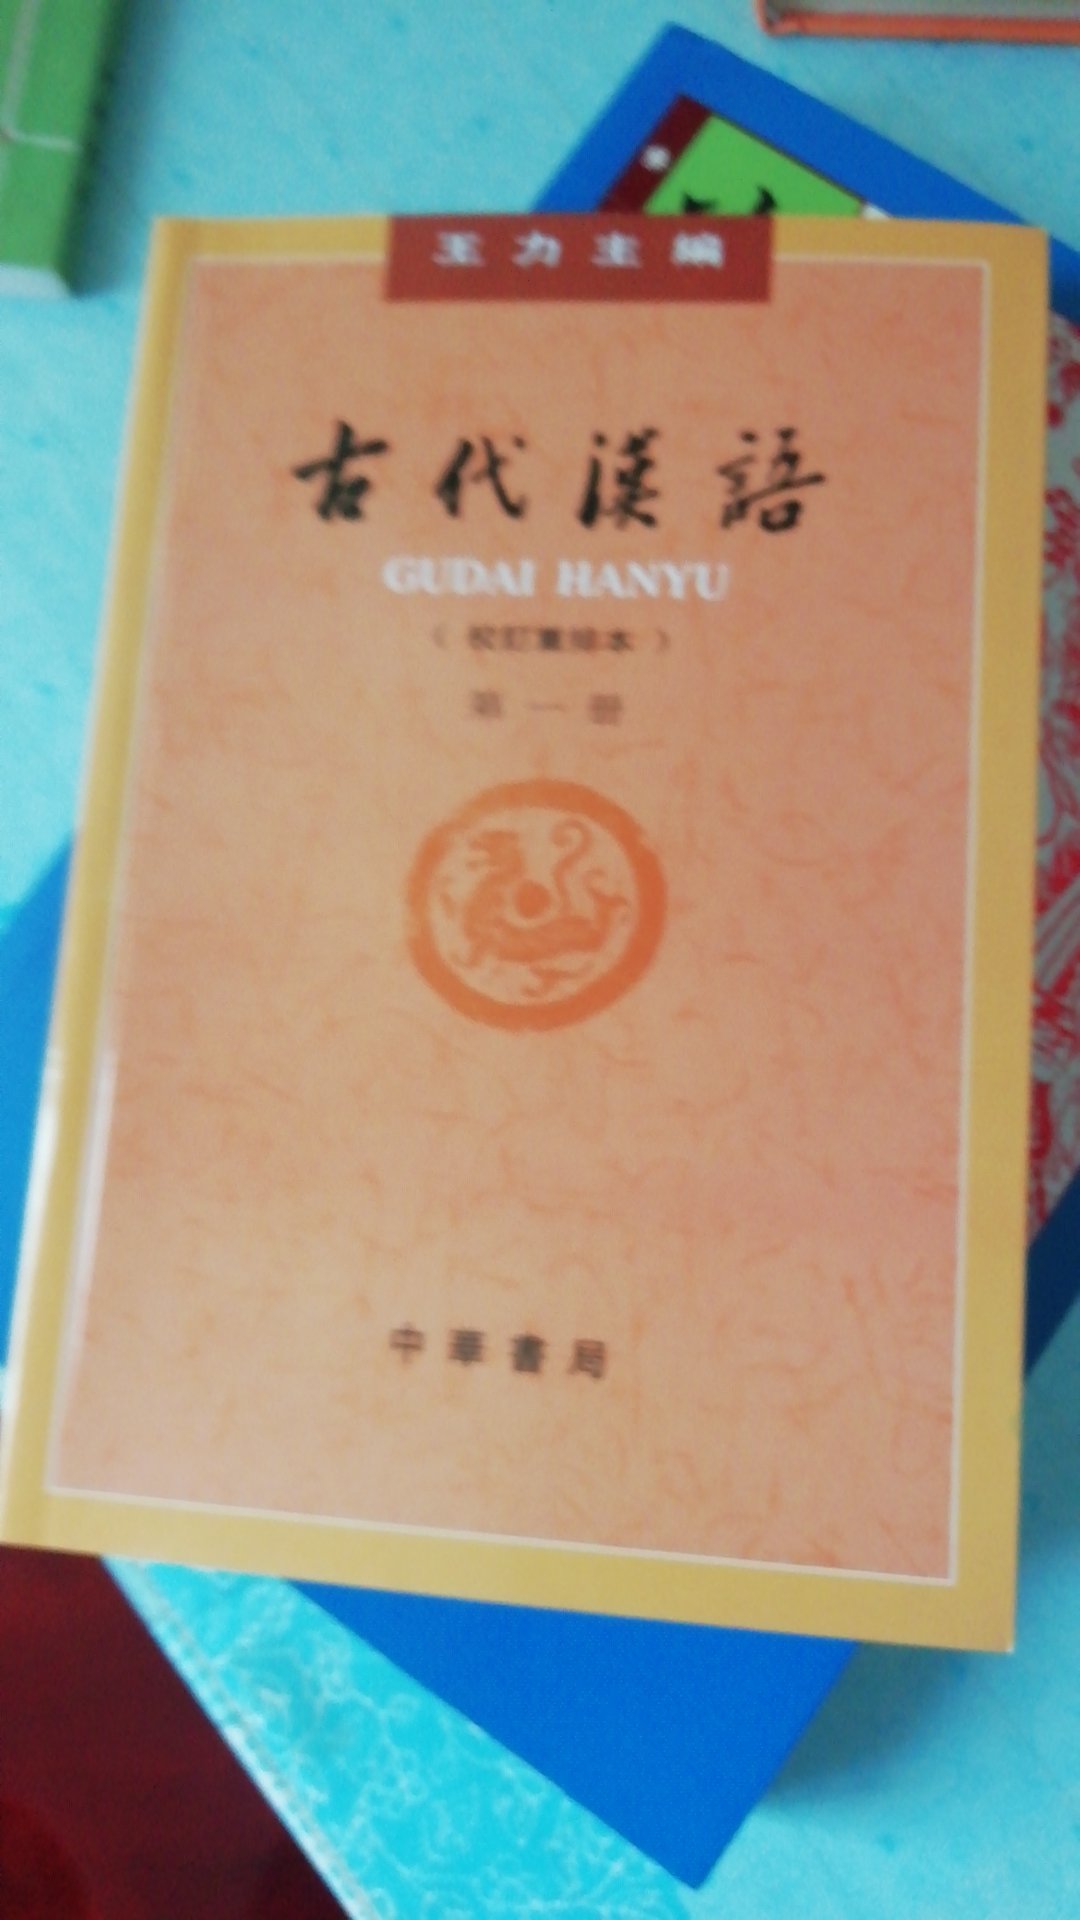 古代汉语入门的好书